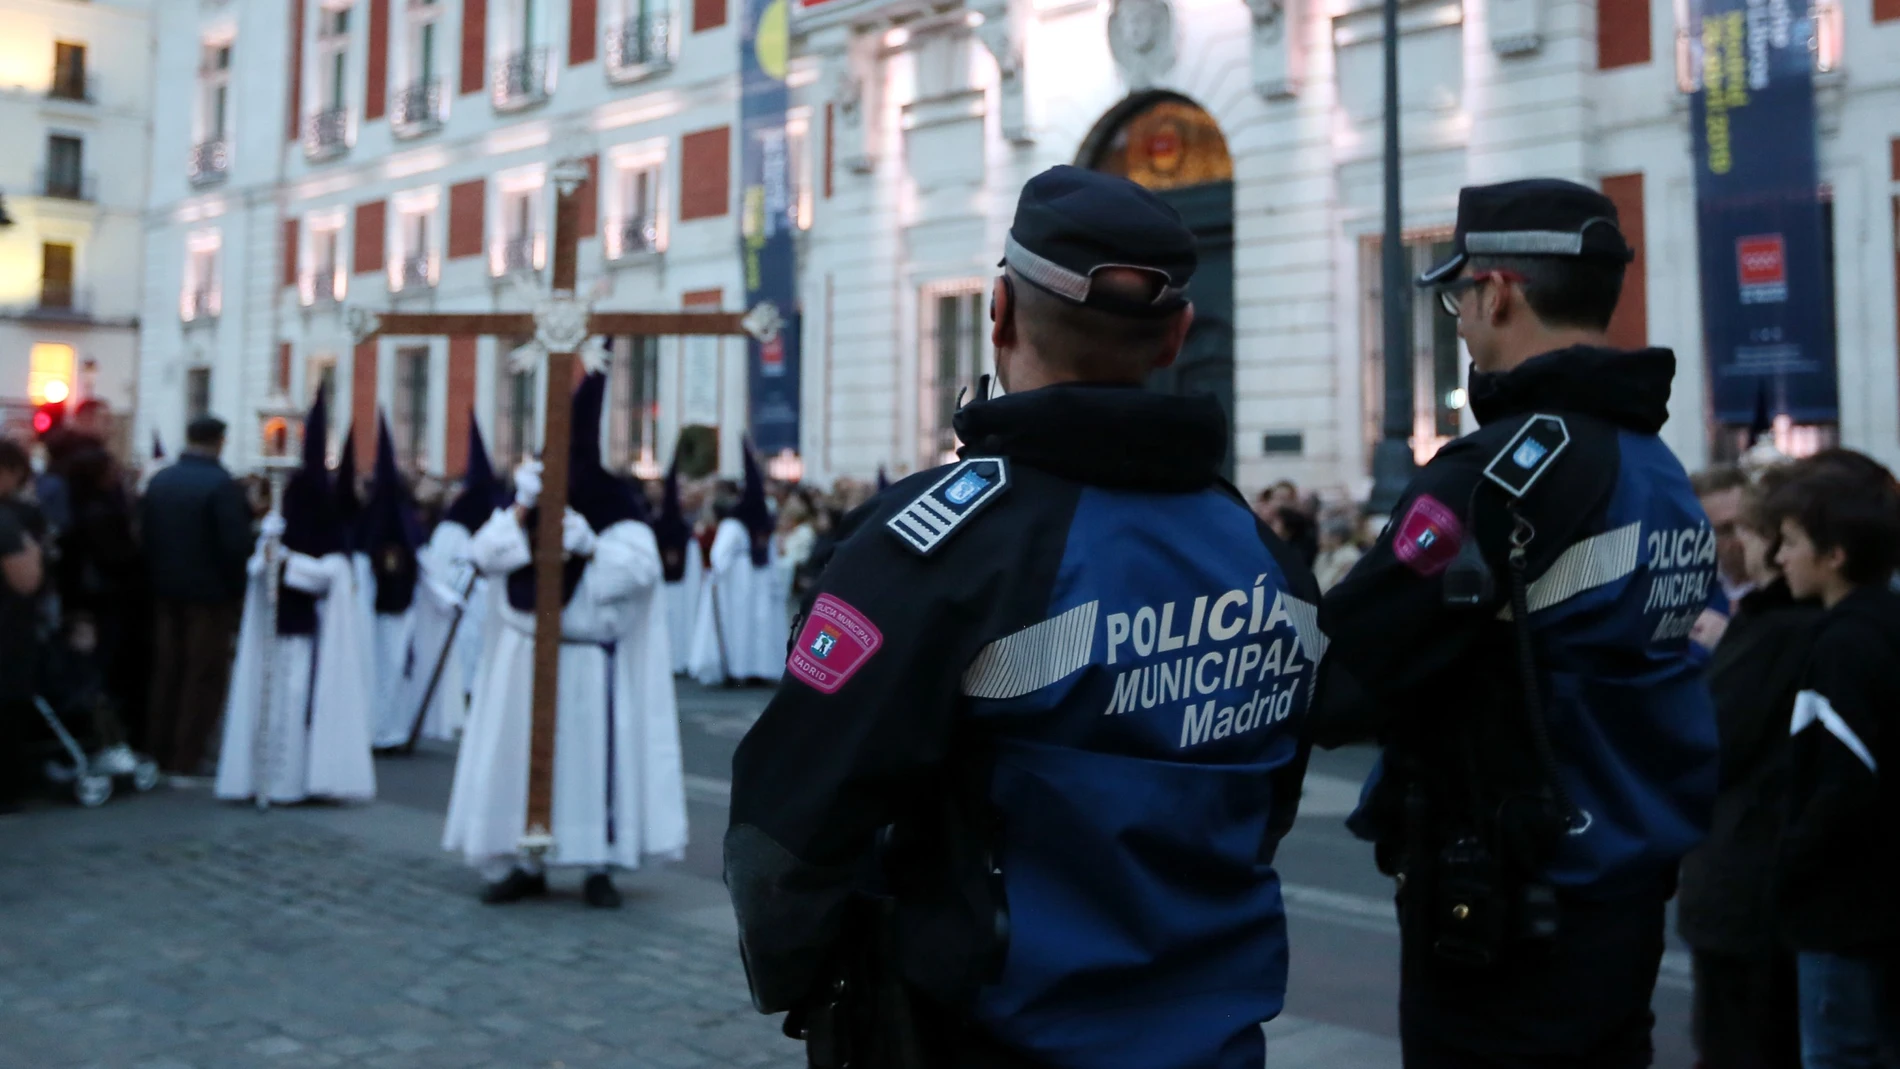 Agentes de la Policía Municipal, durante una procesión en la Puerta del Sol